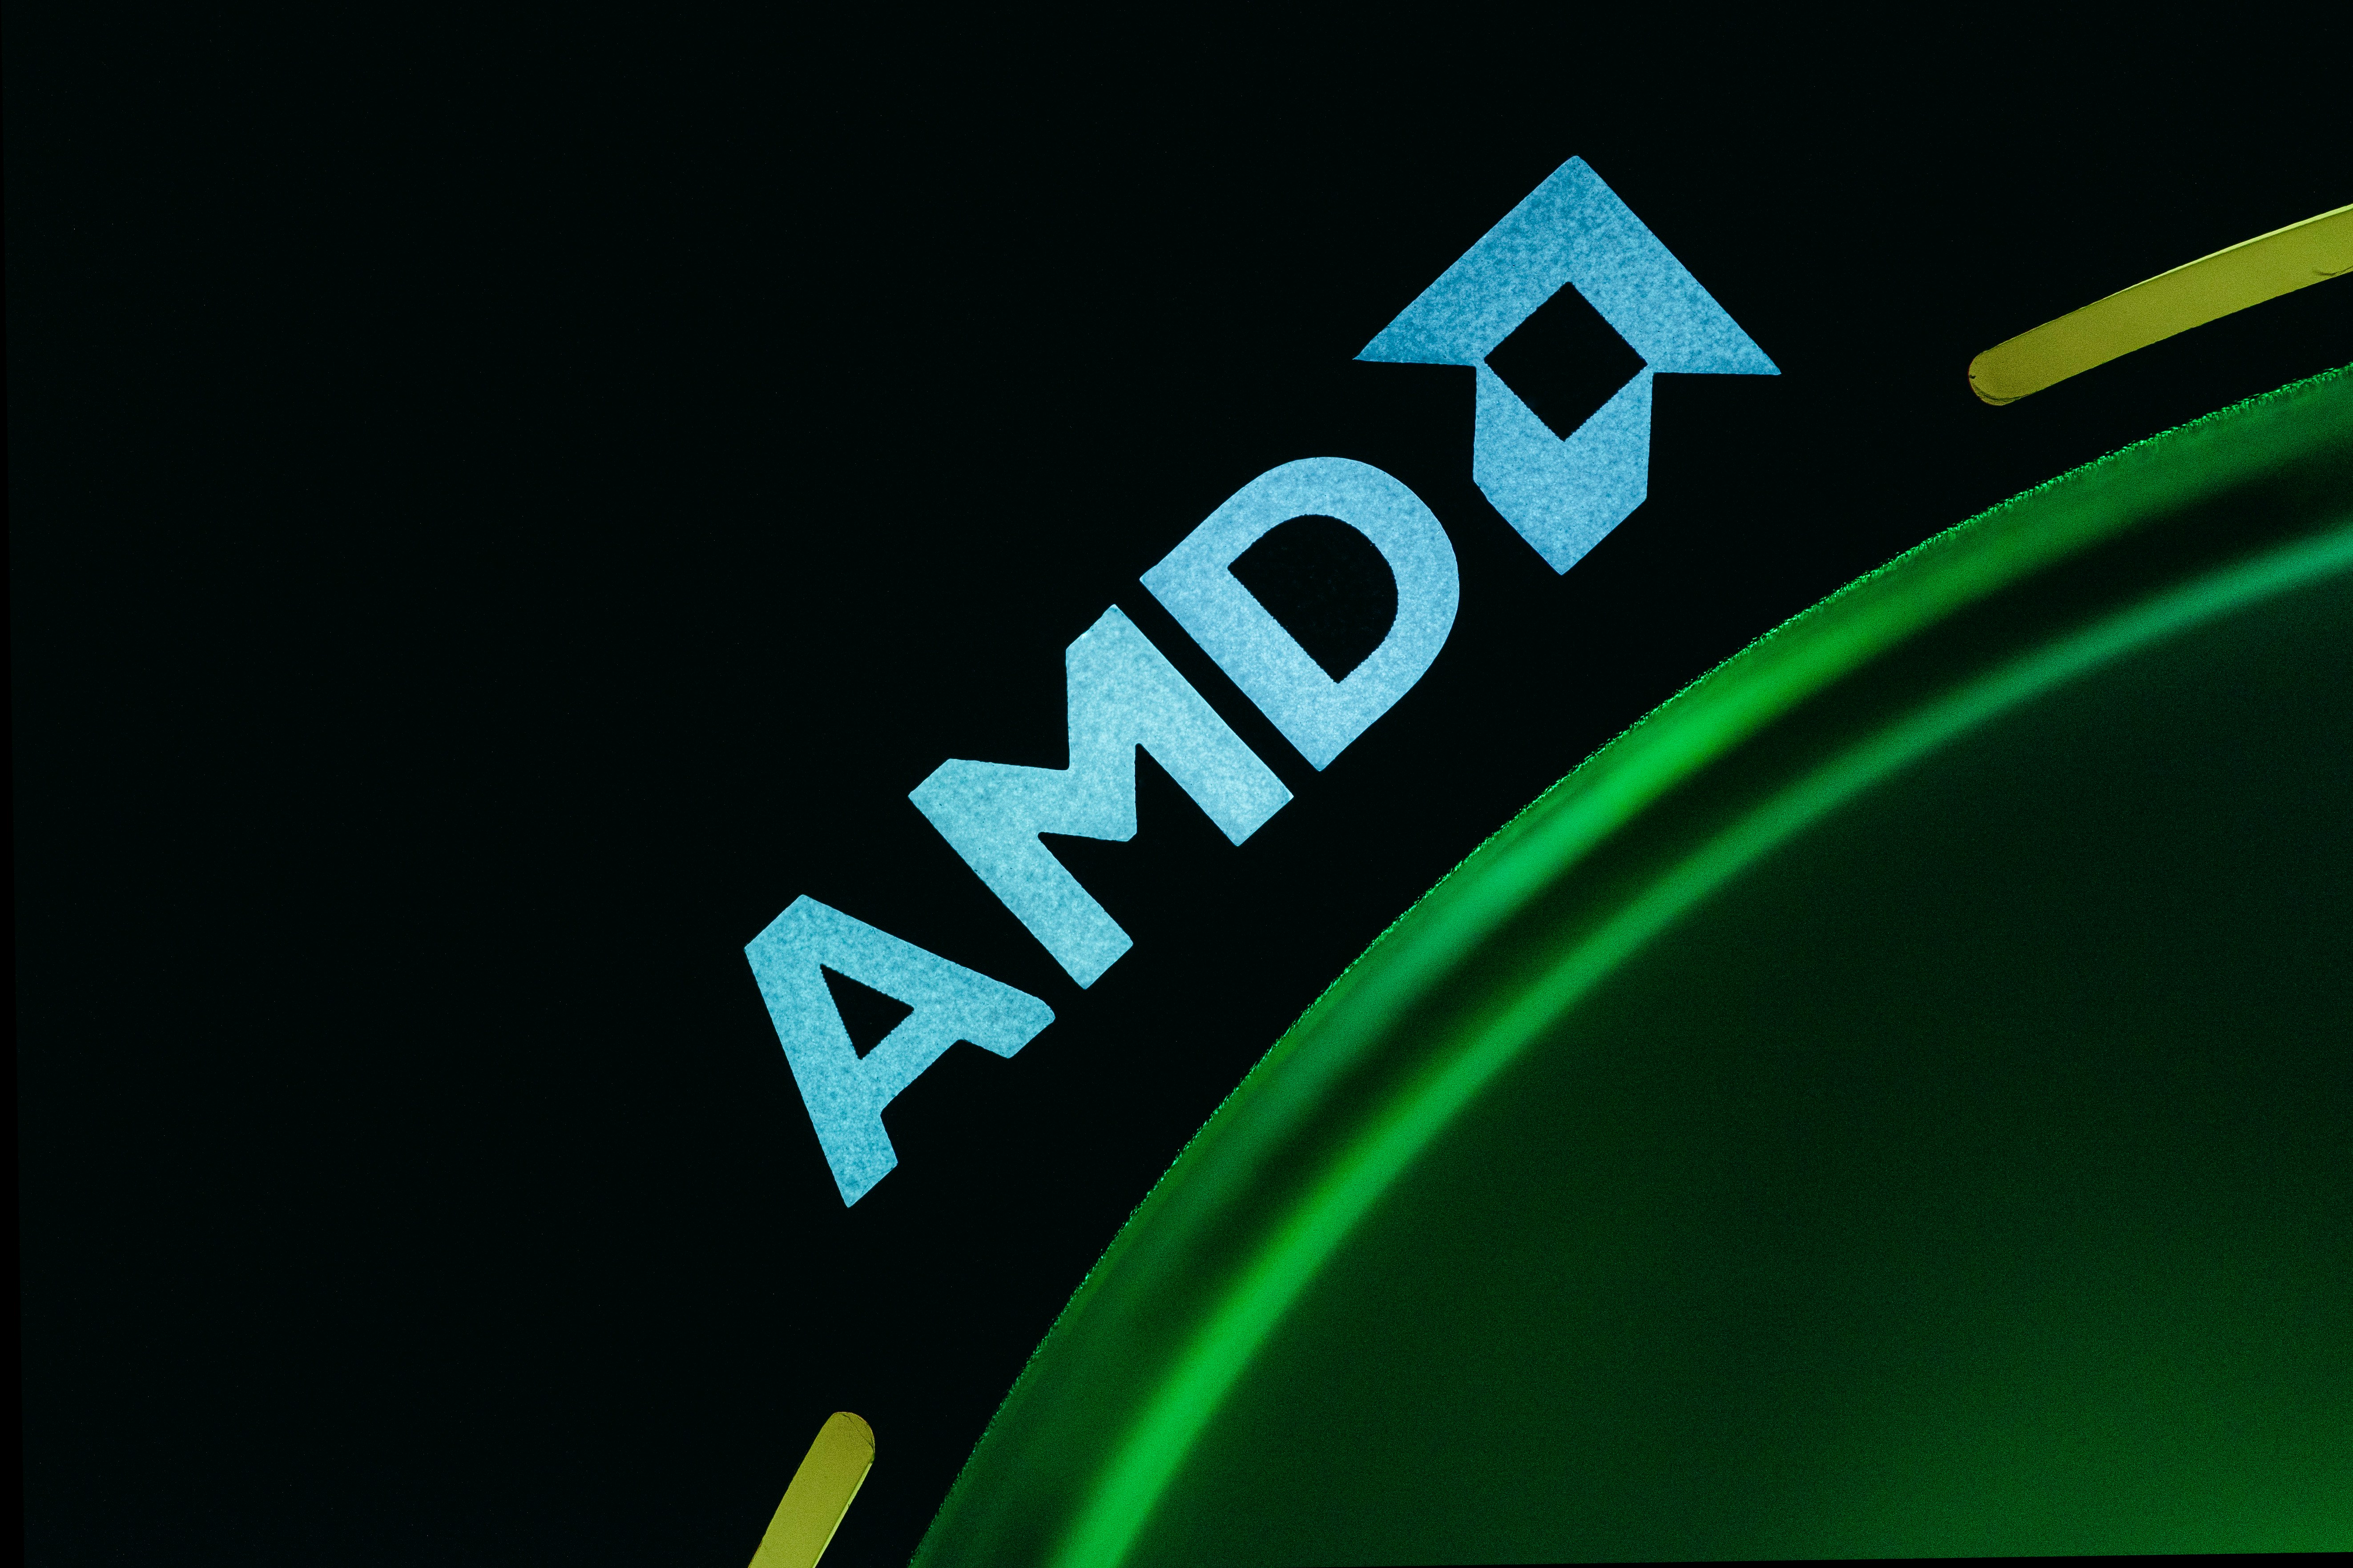 AMD siktar in sig på PC-marknaden för artificiell intelligens i en kamp mot NVIDIA och Intel